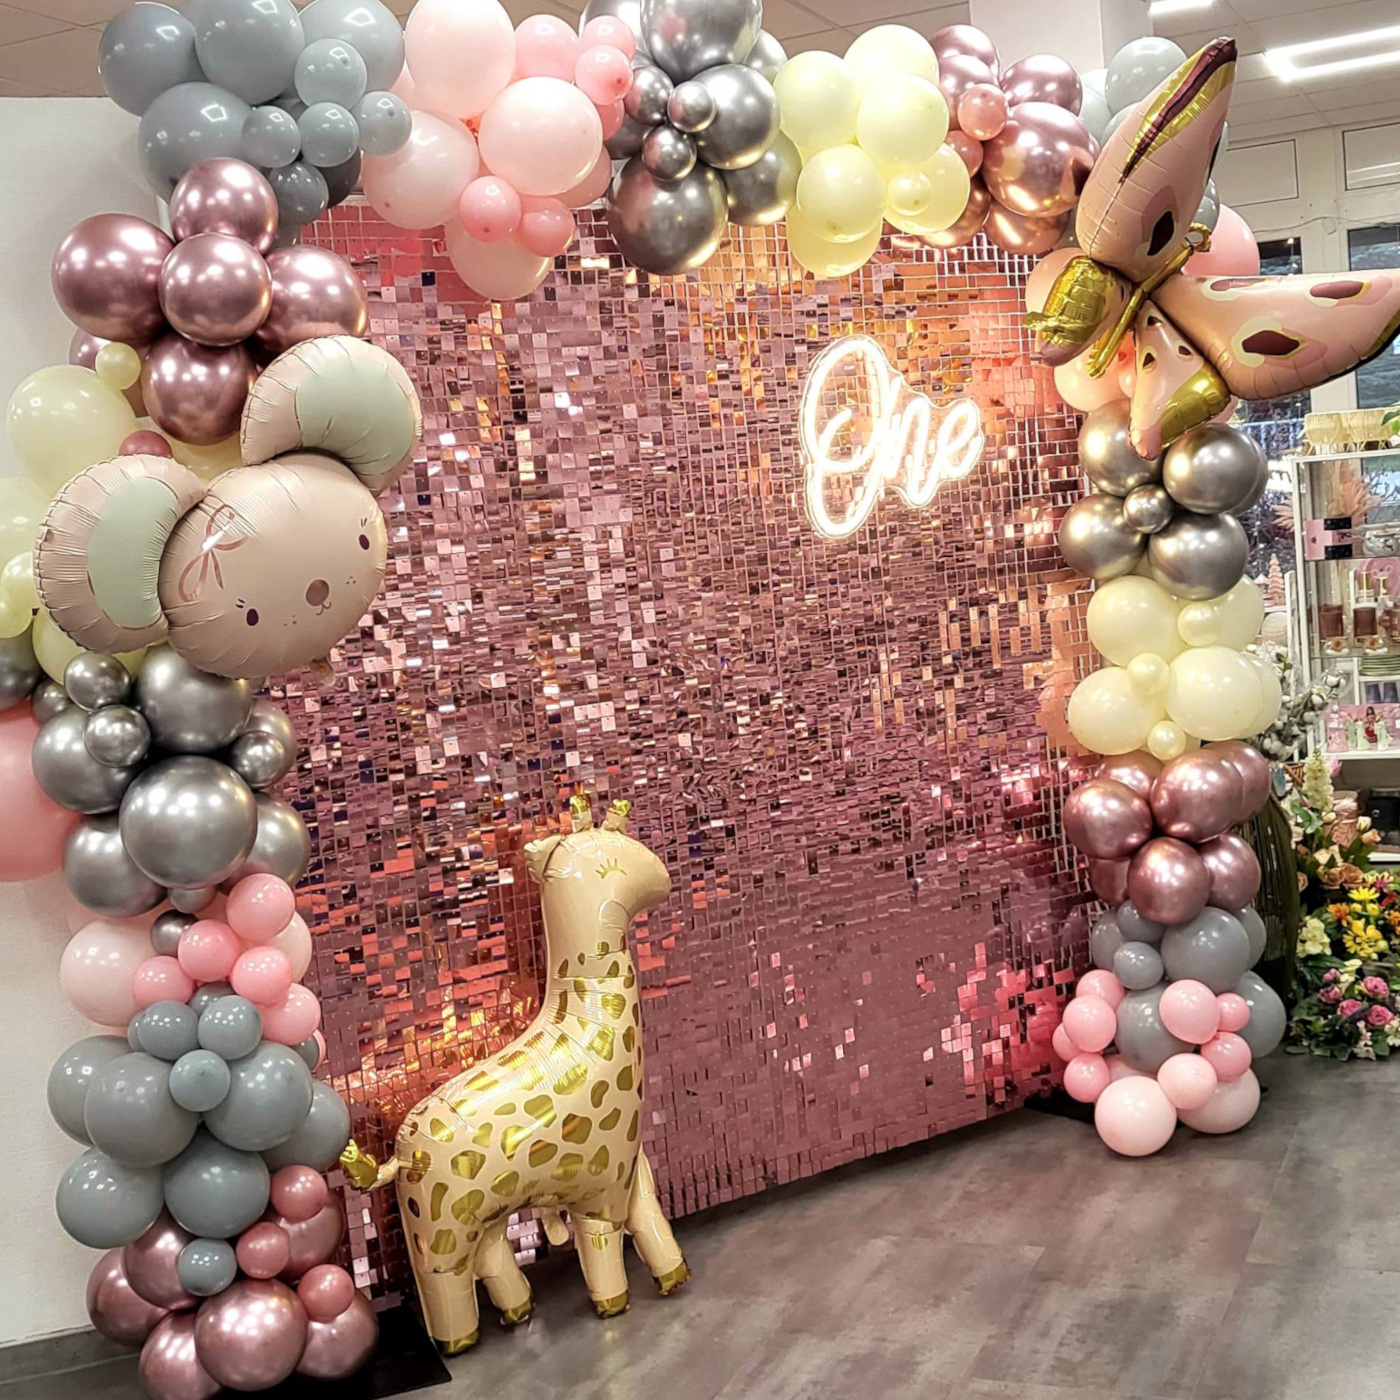 Ścianka w kolorze rose gold z dekoracjami balonowymi na roczek